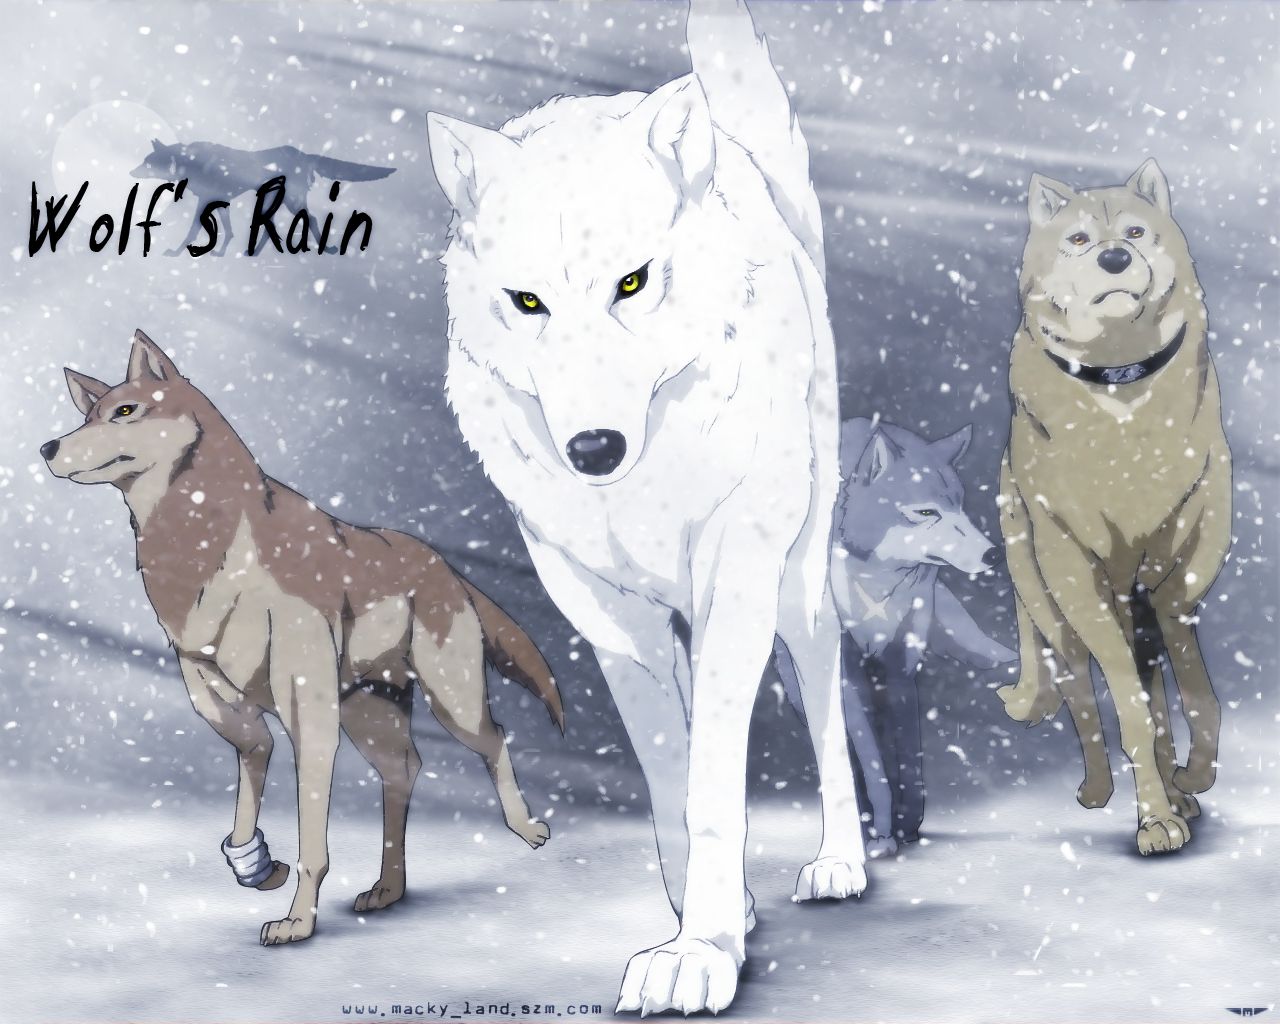 Free download Wolfs Rain Wallpaper 1280x1024 Wolfs Rain 1280x1024